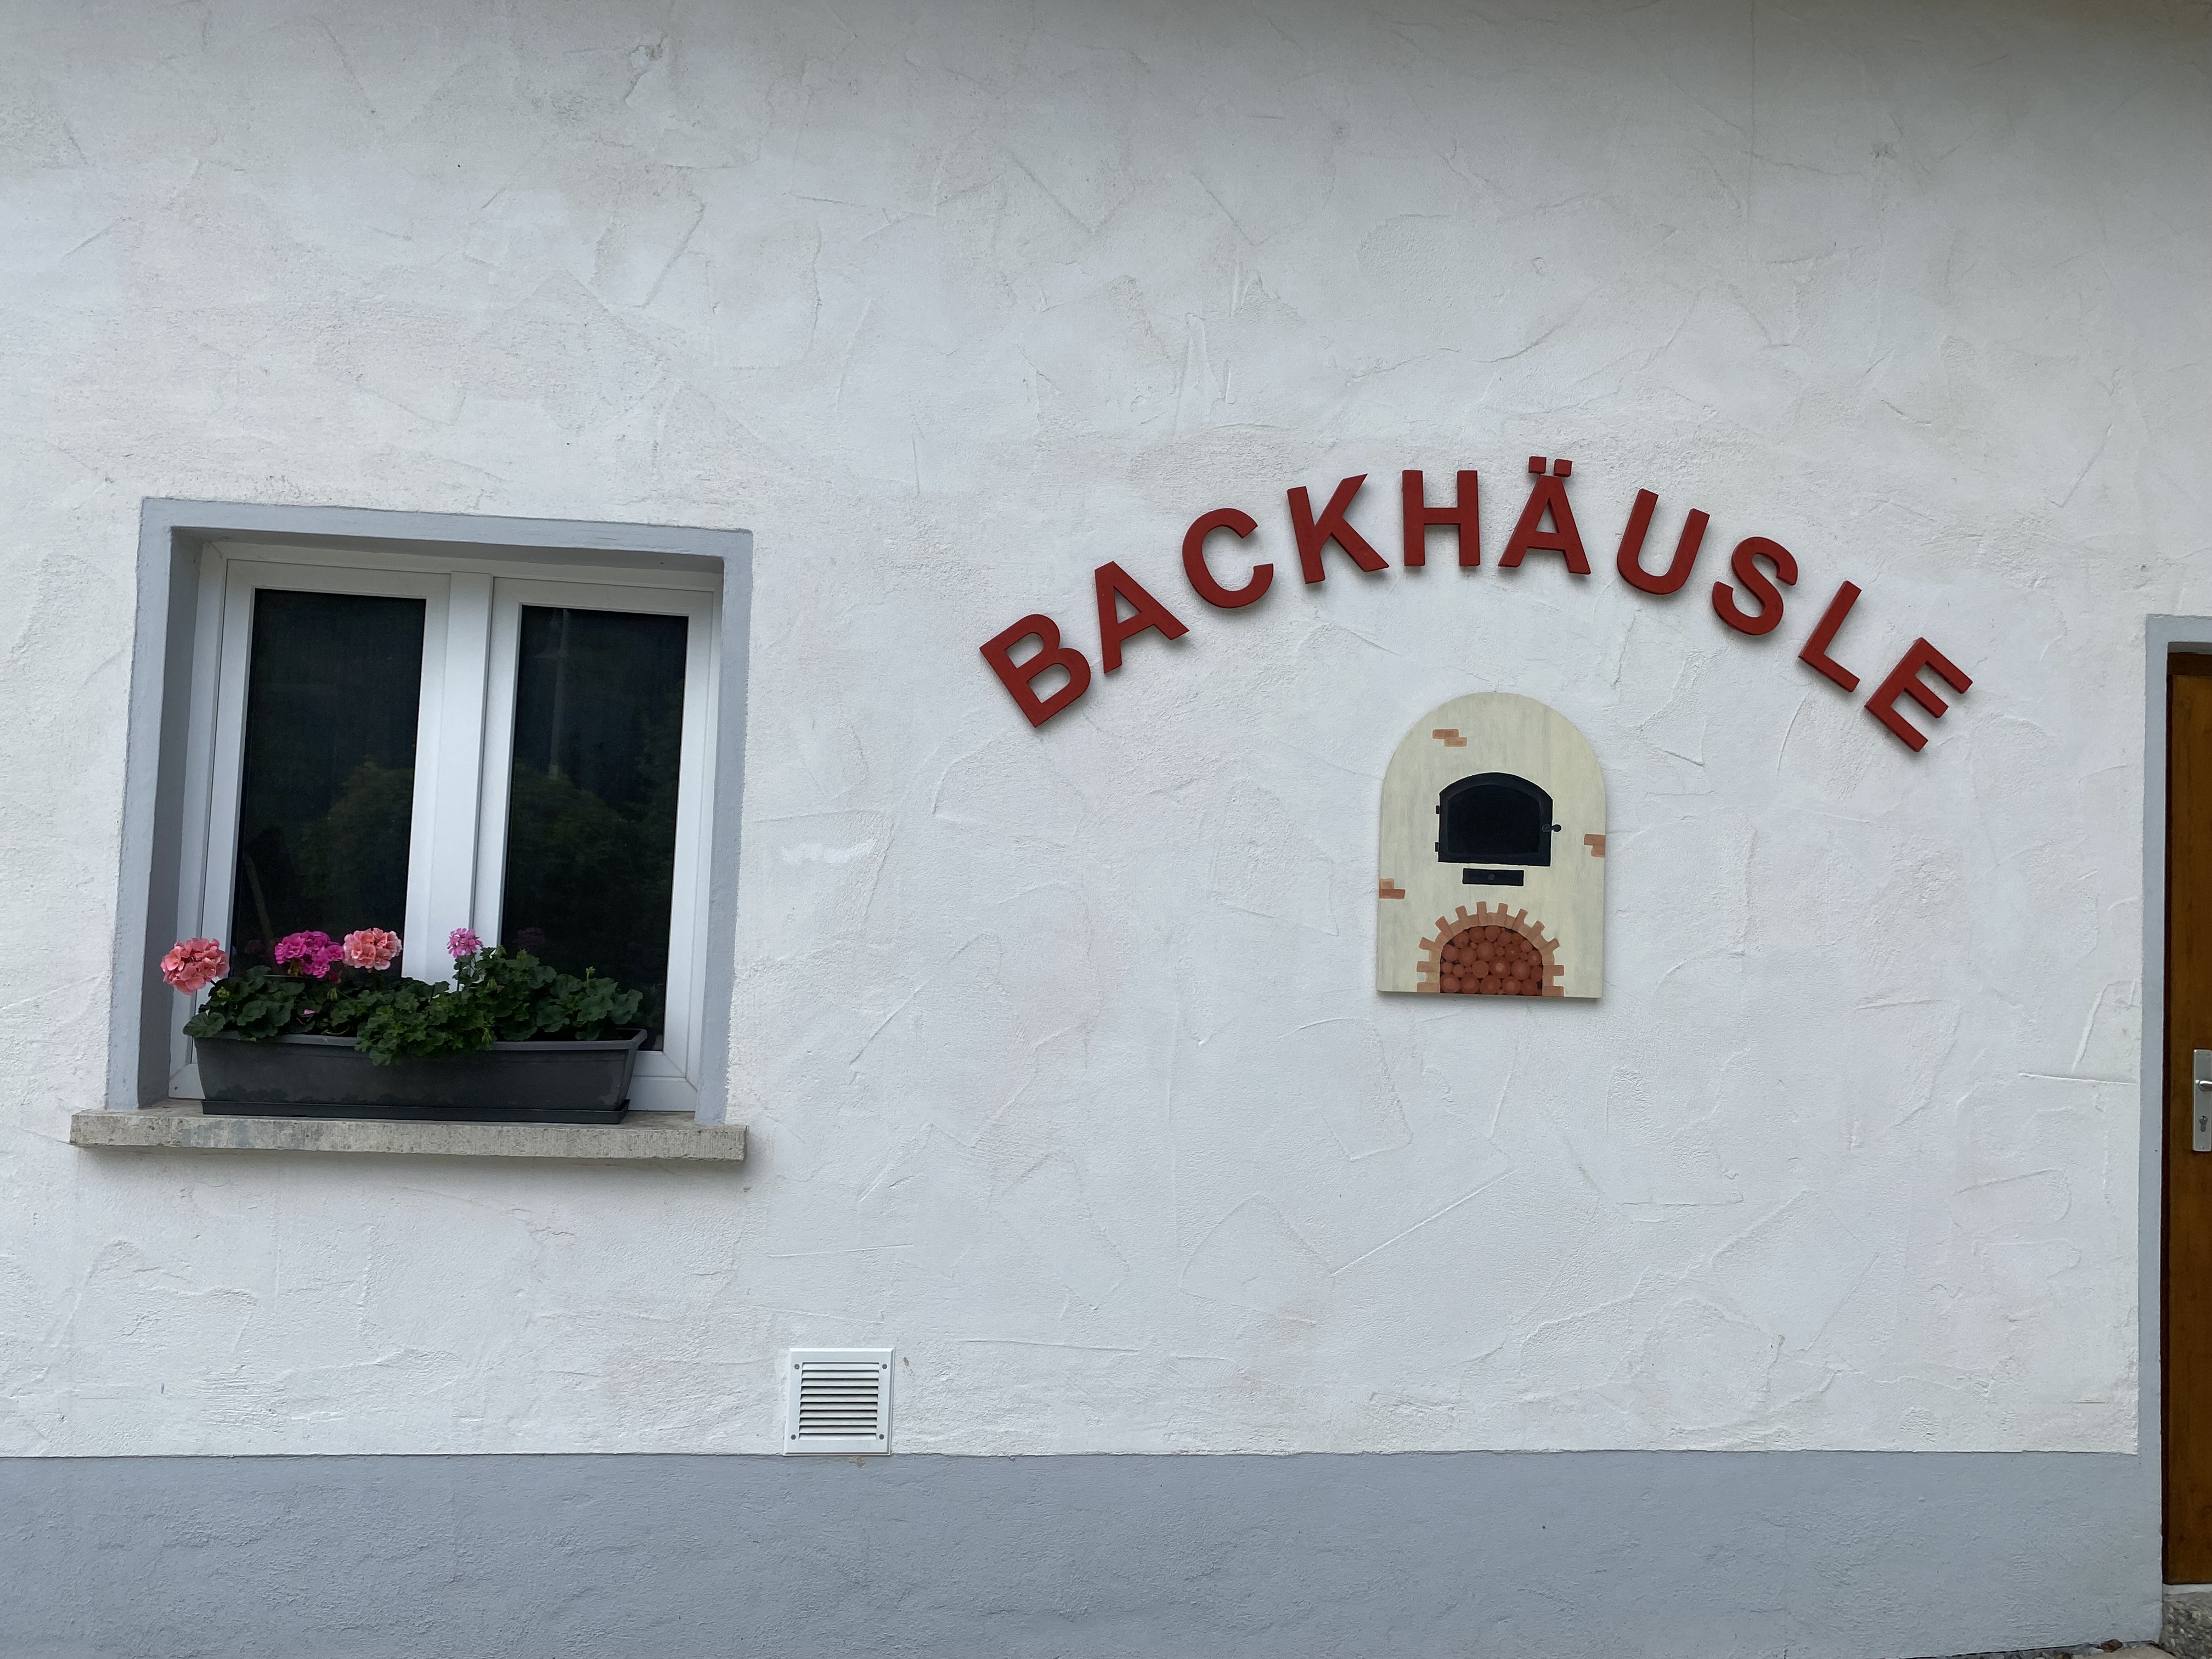  "Unser Backhäusle" der evangelischen Kirchengemeinde Börtlingen-Birenbach 